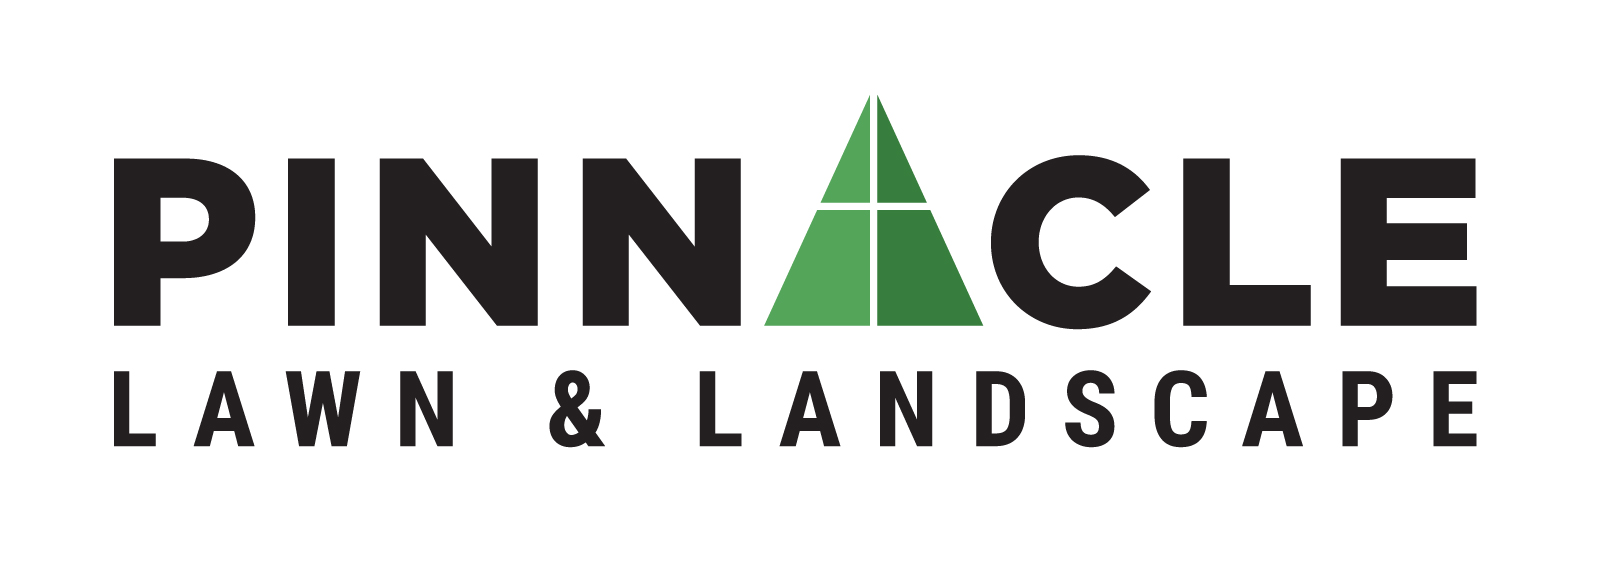 Pinnacle Lawn & Landscape Logo